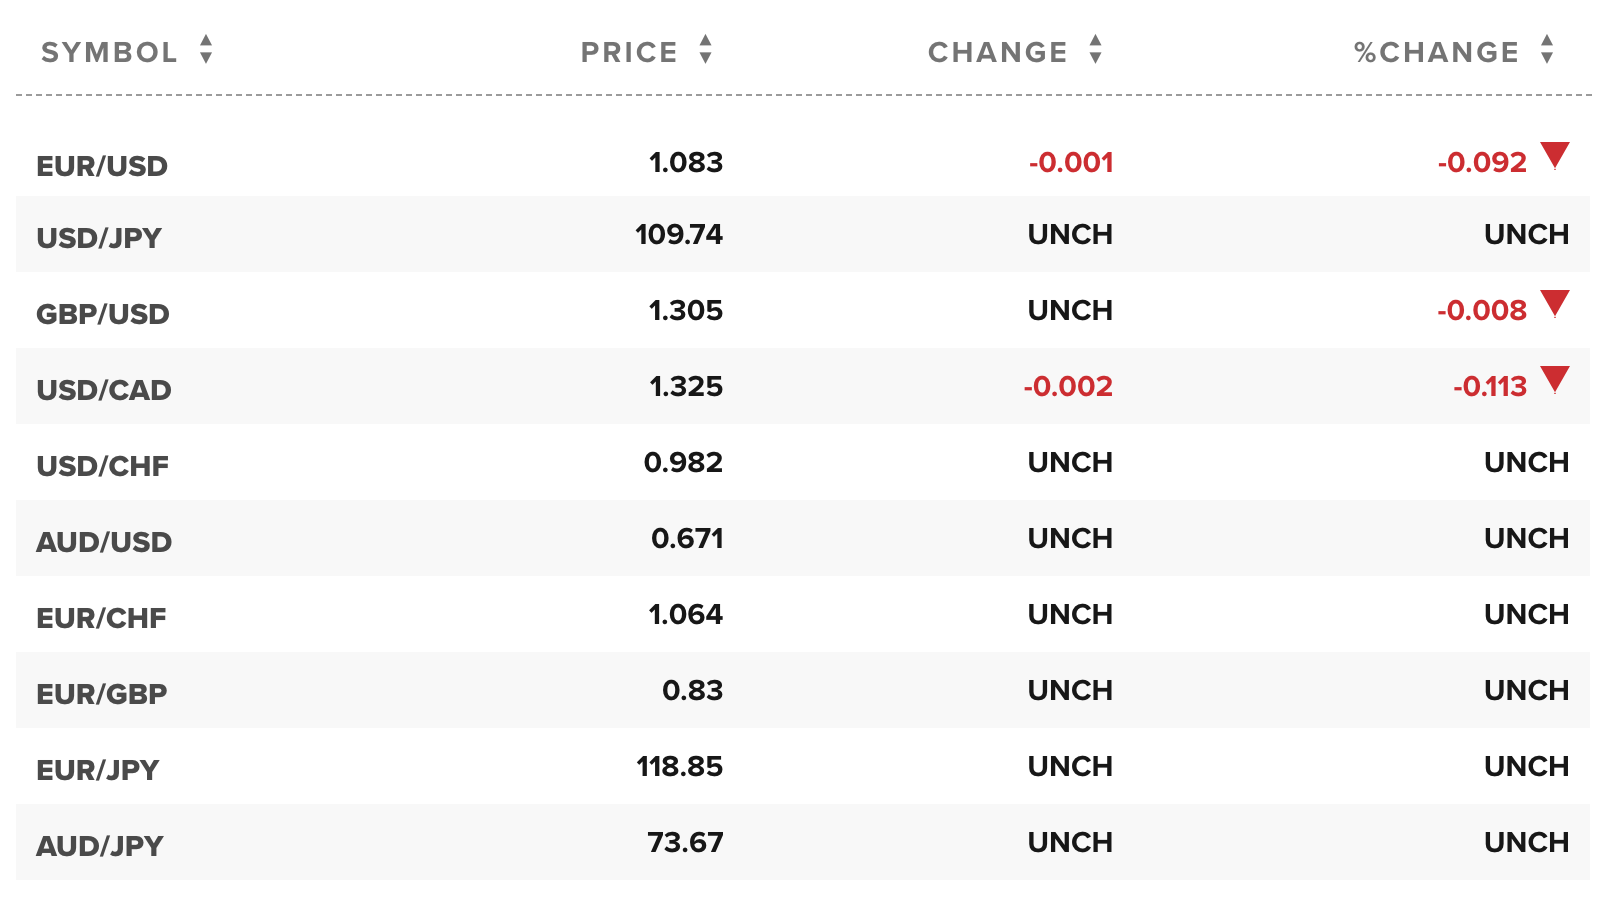 Tỷ giá ngoại tệ các đồng tiền trong rổ tiền tệ thế giới (nguồn CNBC)